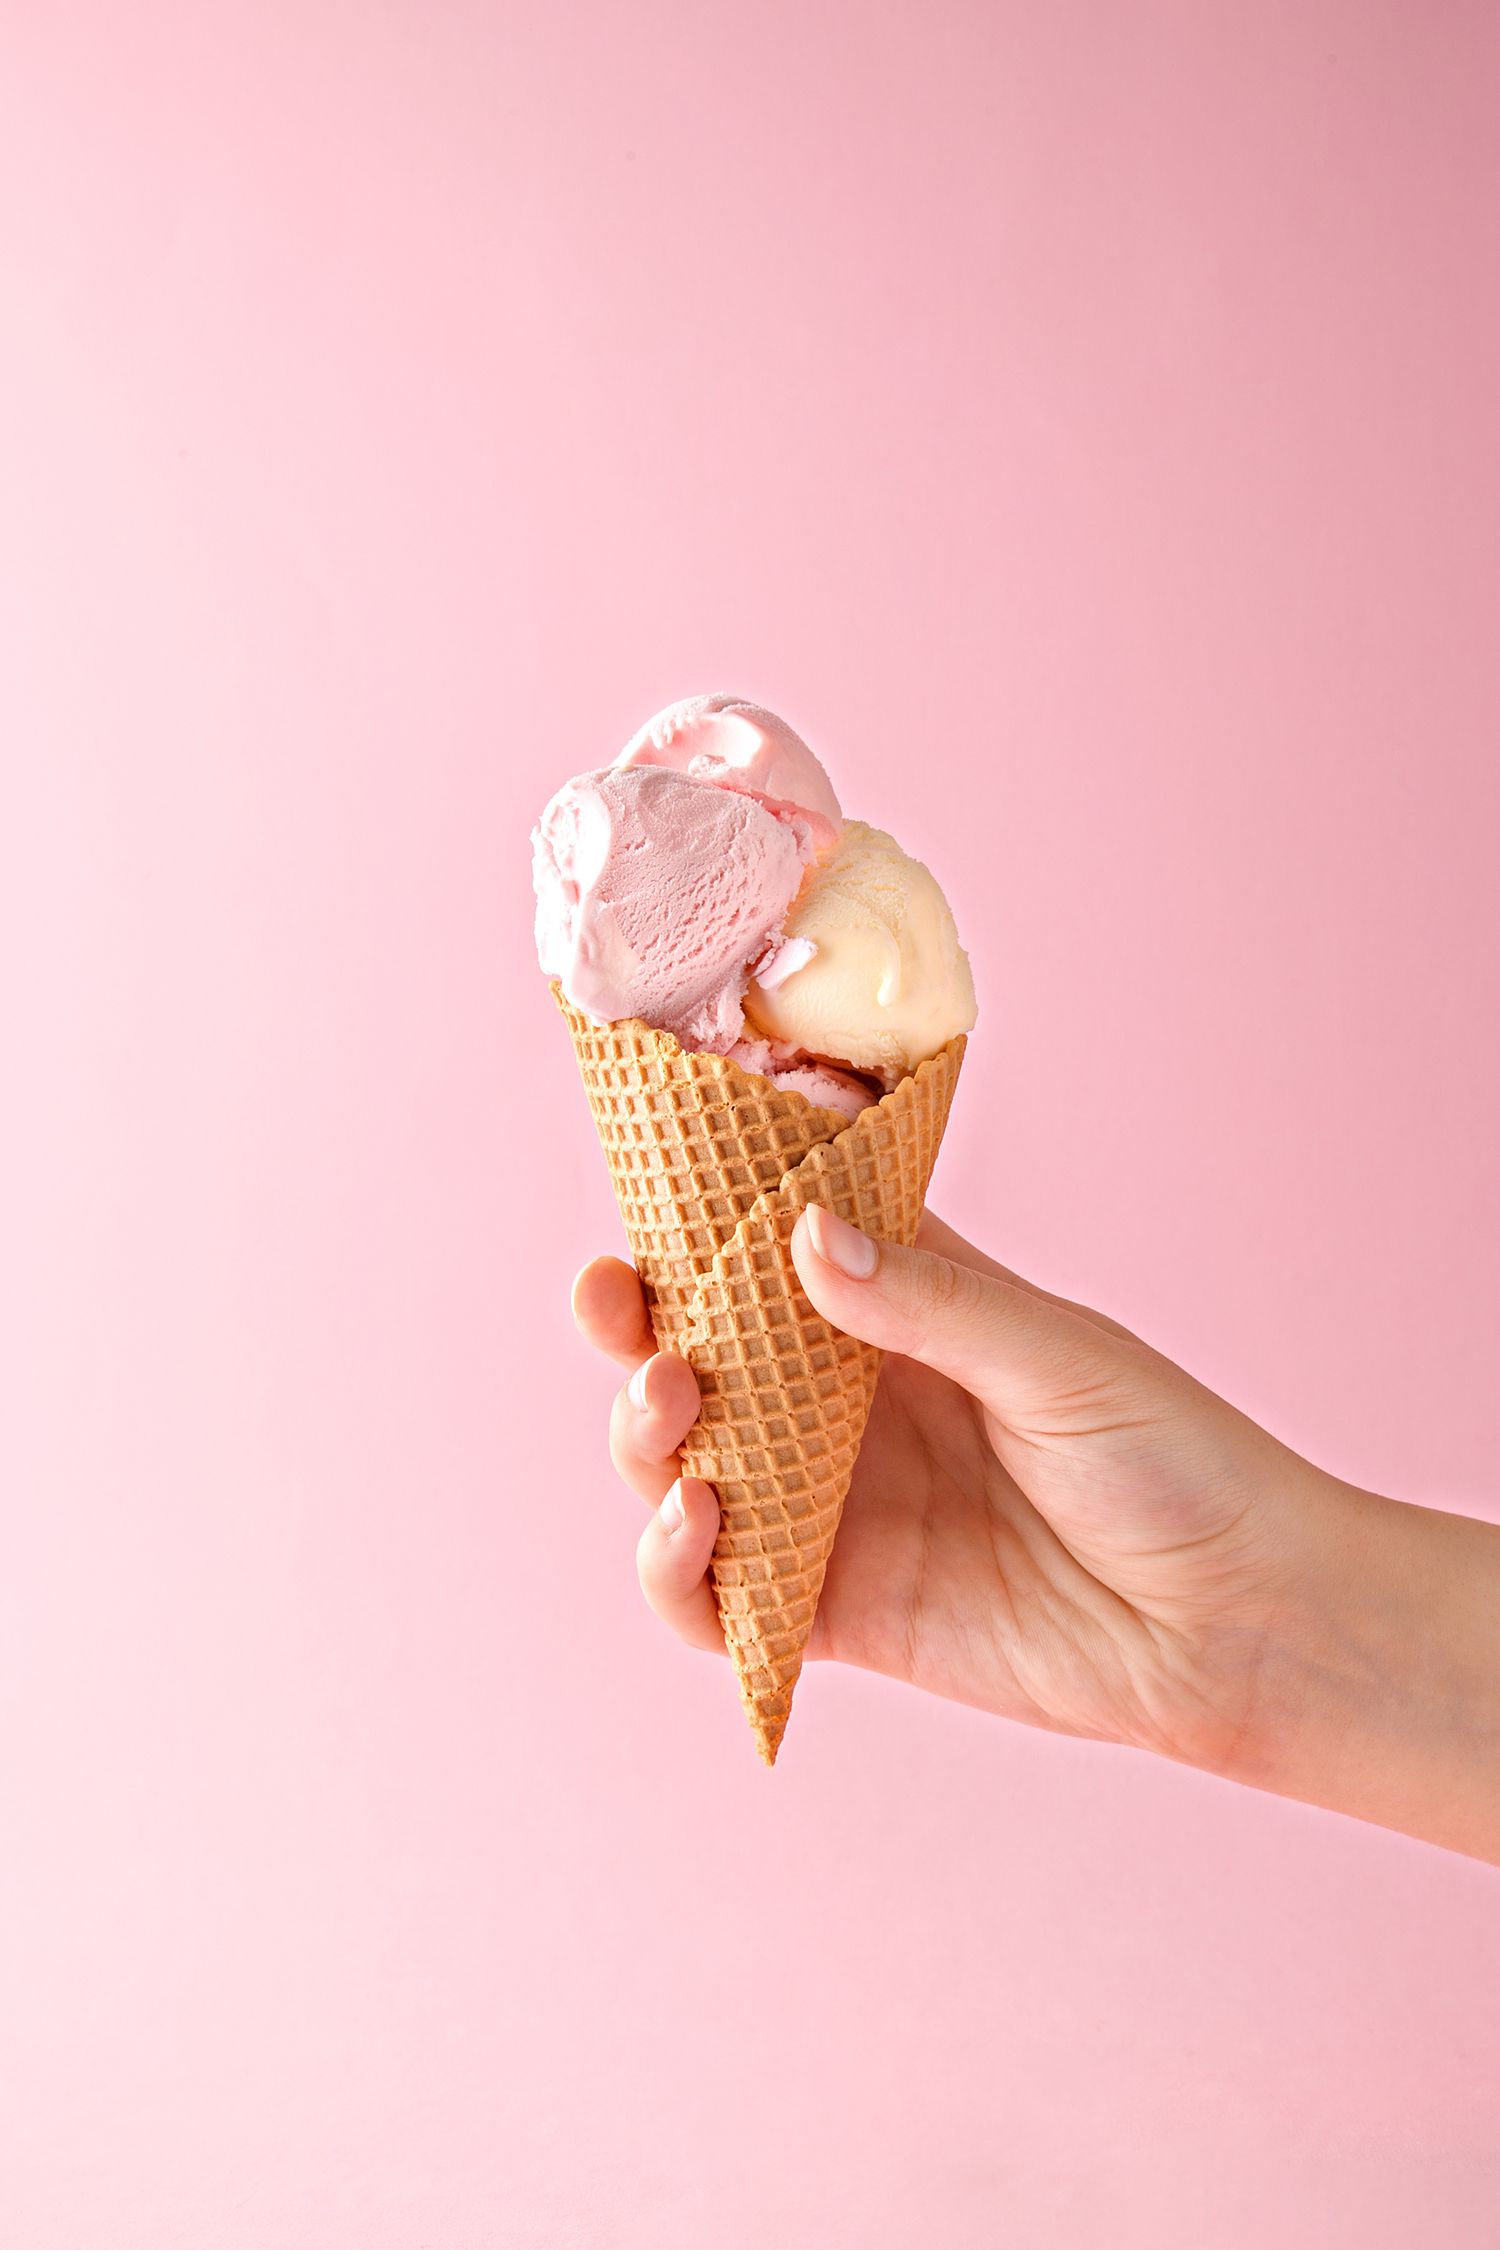 Vanilla and Strawberry Ice Cream in a Cone